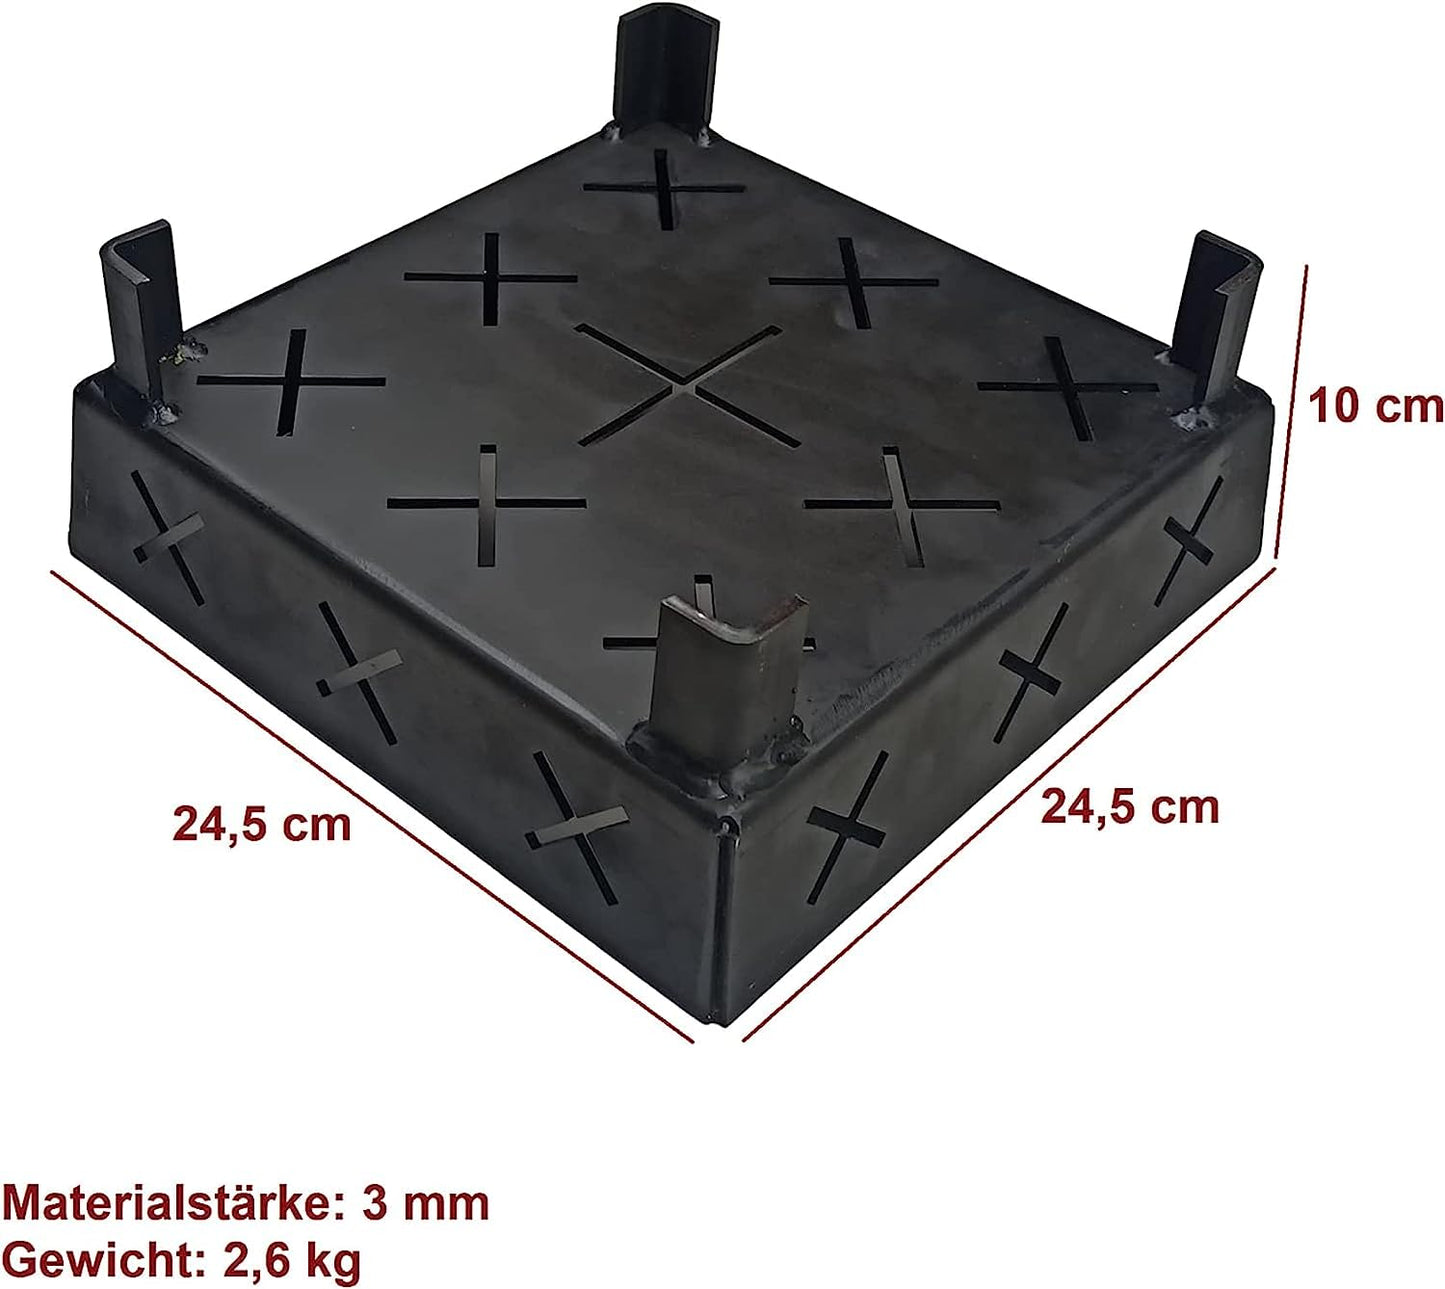 FEUERKAISER 3 mm Dicke Stahl Anzündkorb, Pelletkorb, Pelletbrenner für Kamin, Ofen und Grill, geeignet im Innen- und Außenbereich mit Brennstoff (24,5 x 24,5 x 10 cm)